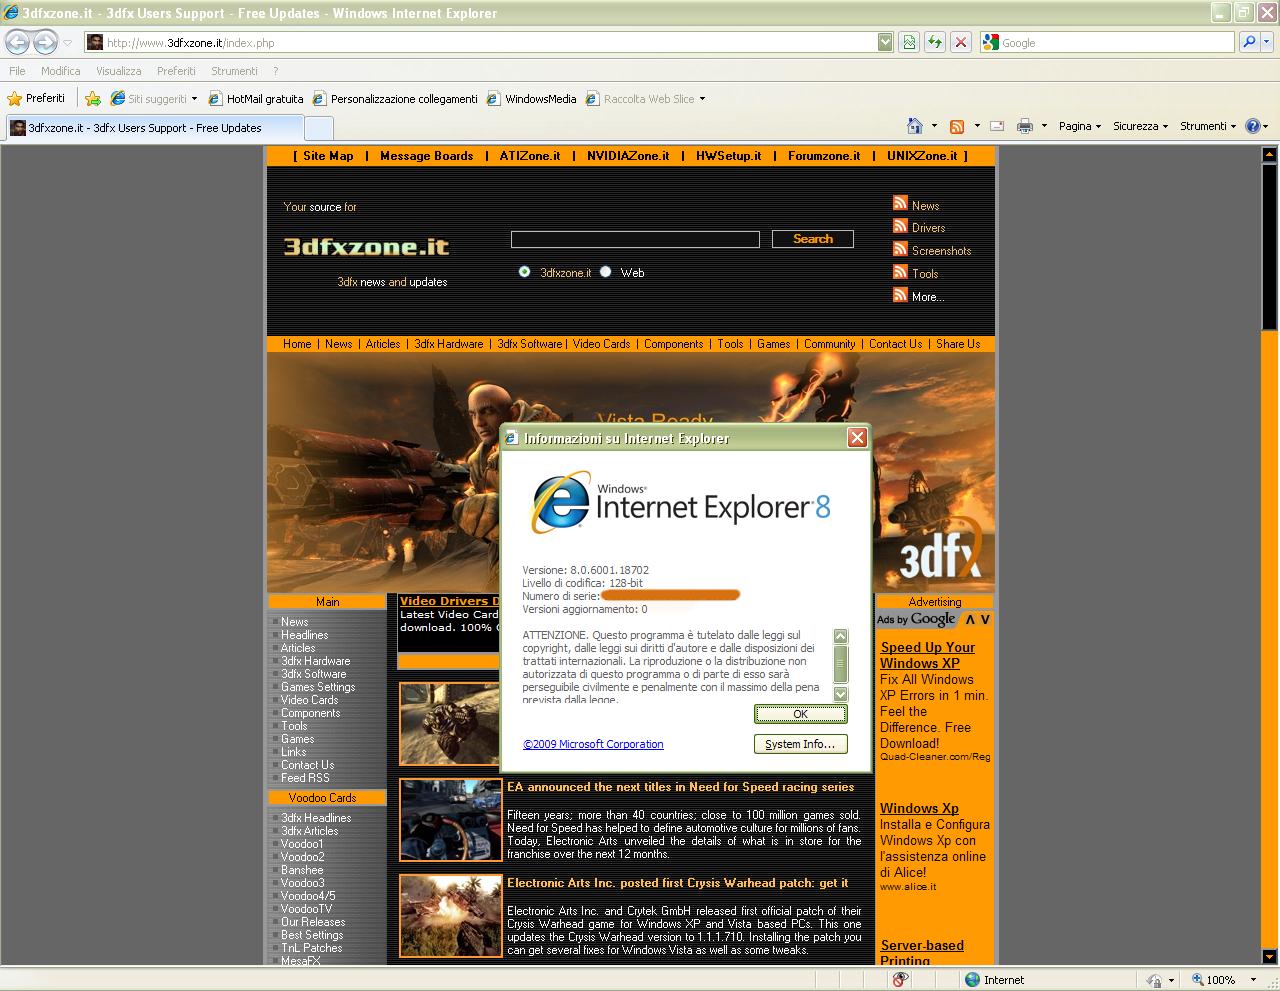 Immagine pubblicata in relazione al seguente contenuto: Microsoft rilascia il browser Internet Explorer 8 in versione finale | Nome immagine: news9900_1.jpg